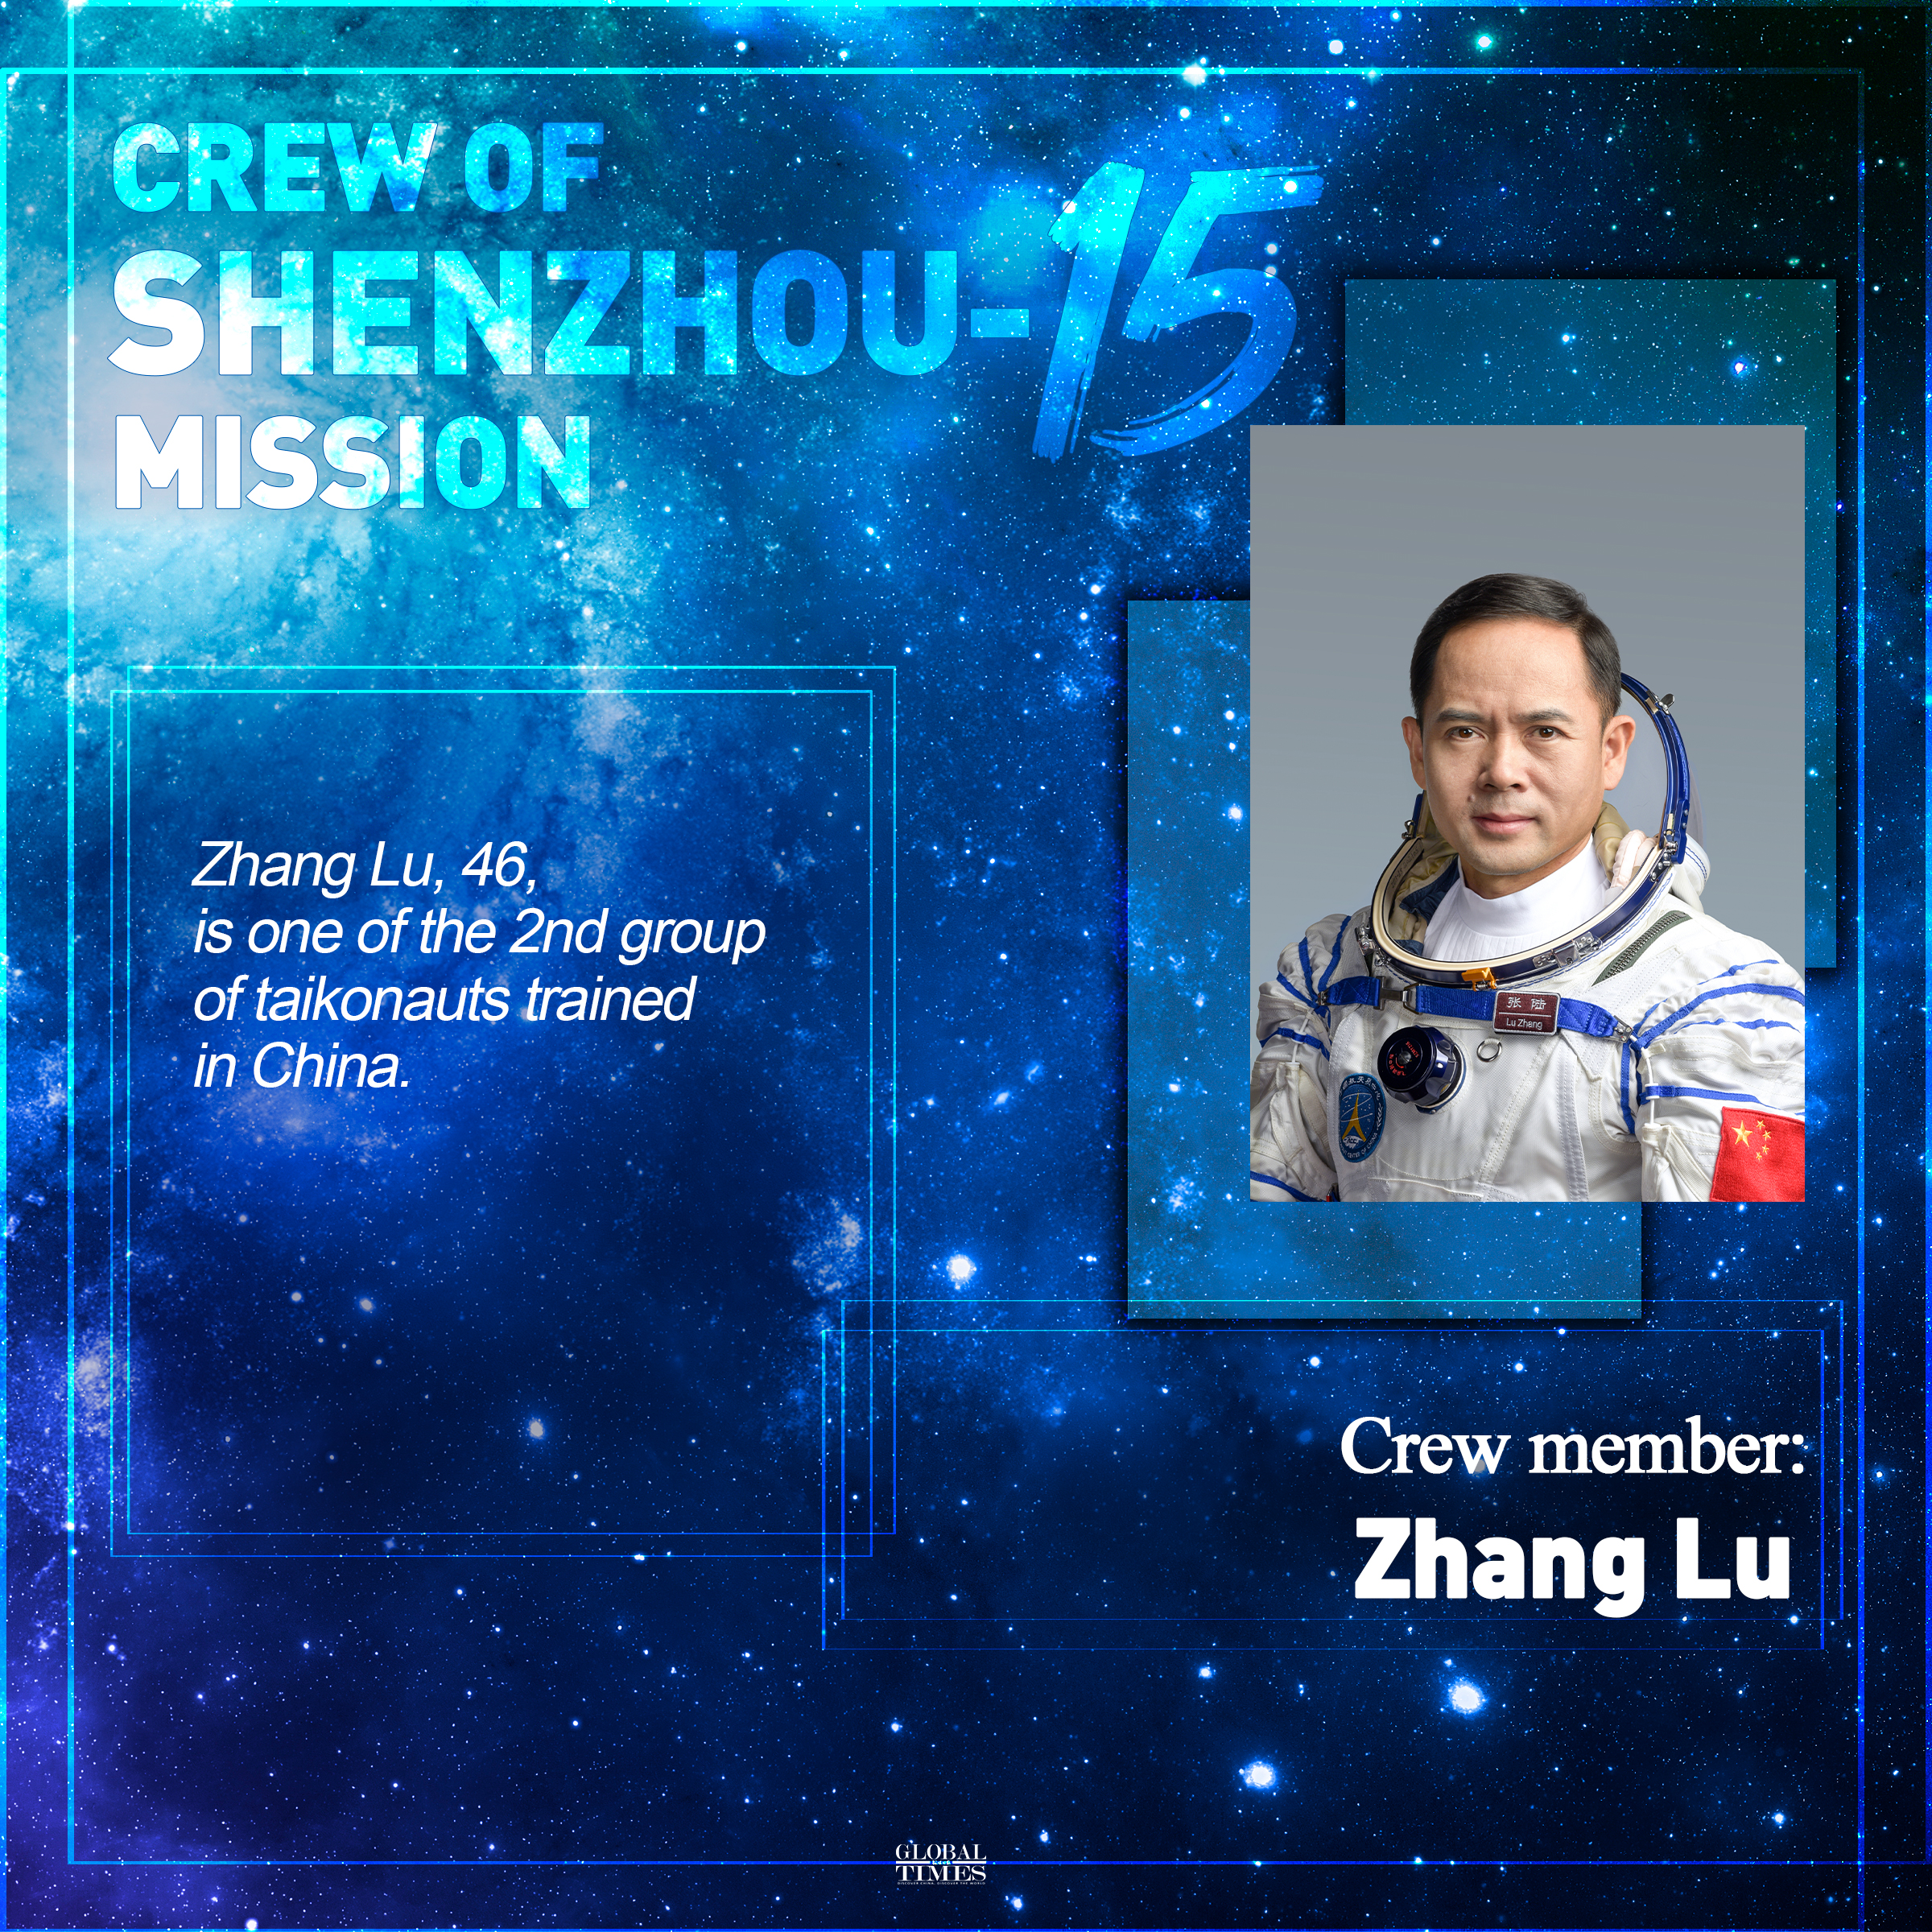 Crew of Shenzhou-15 mission